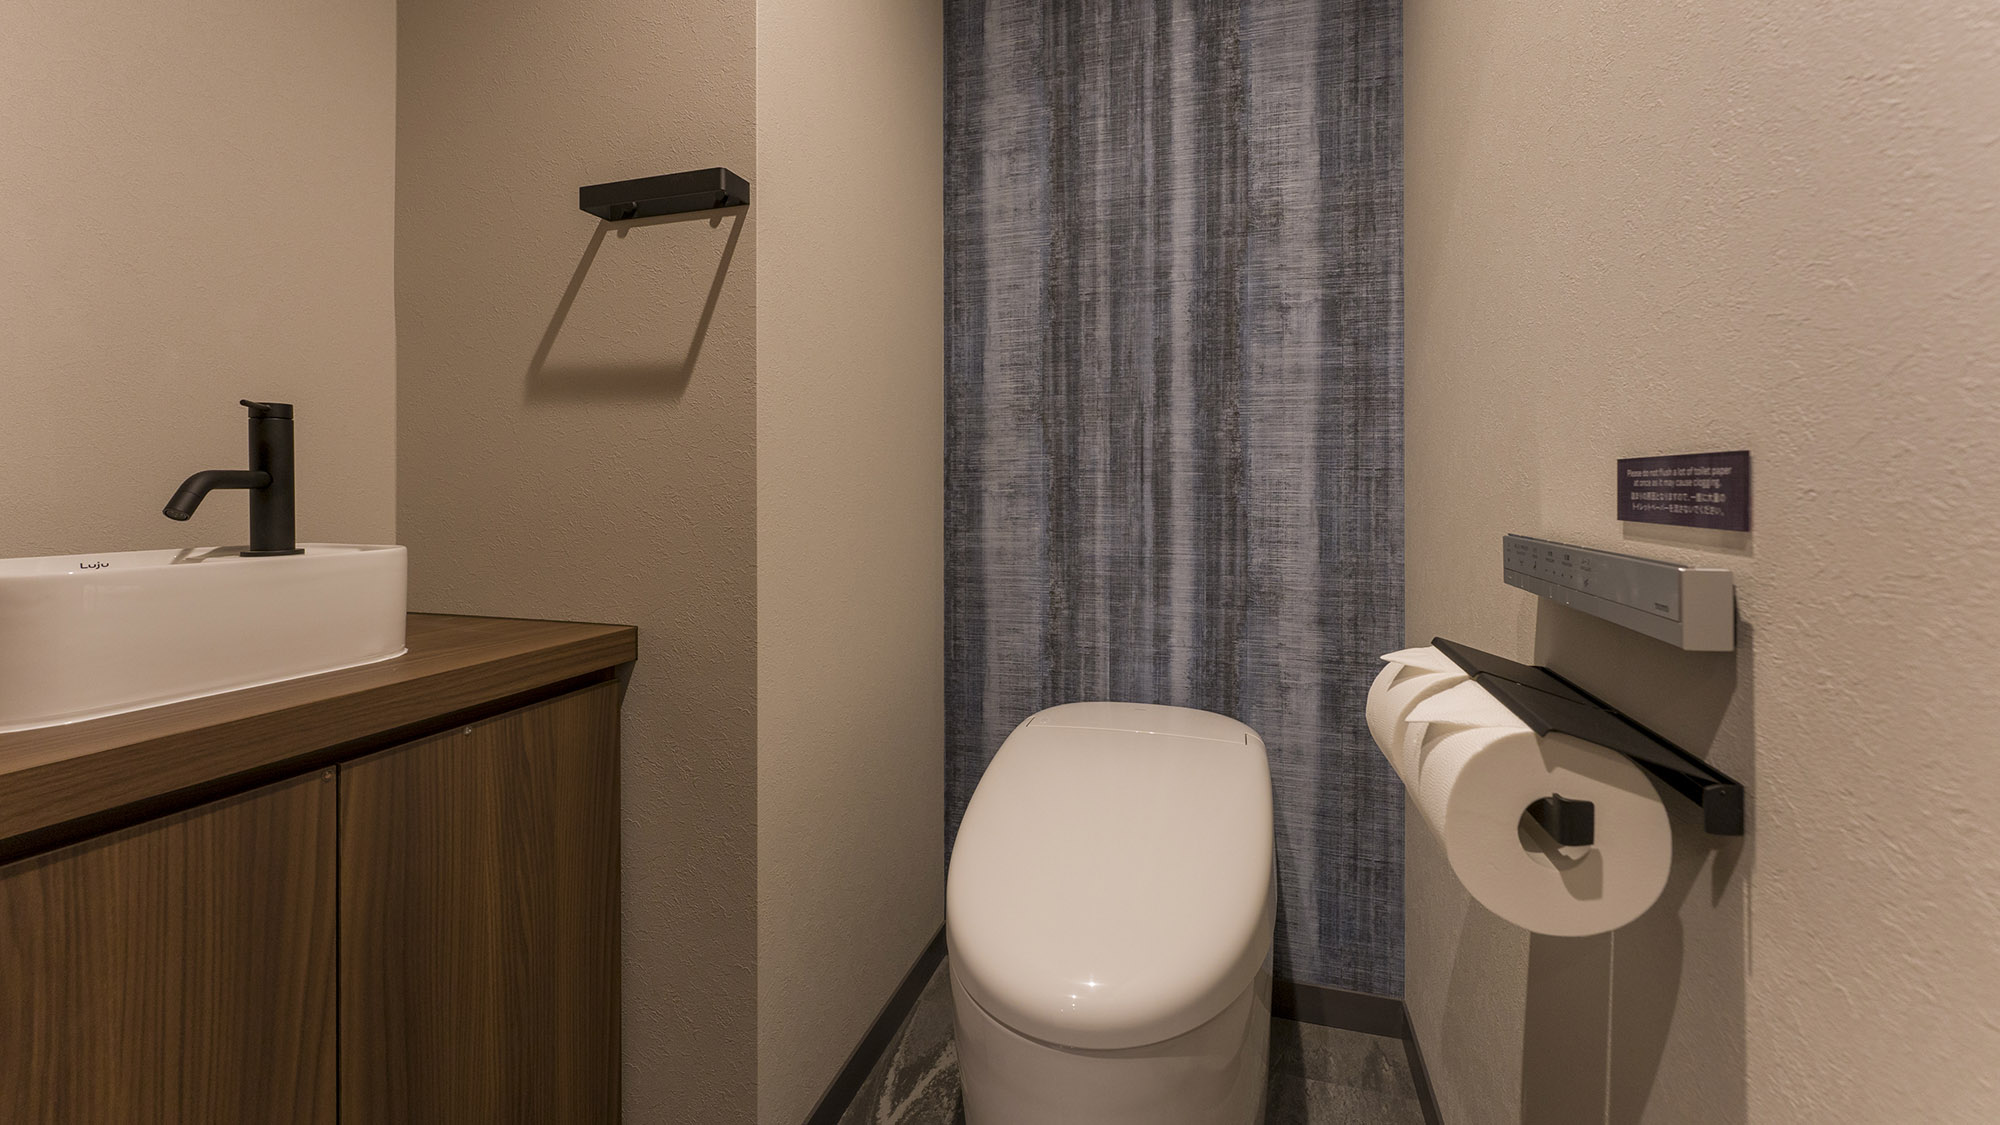 【トイレ】全室に温水洗浄機能付きトイレを完備